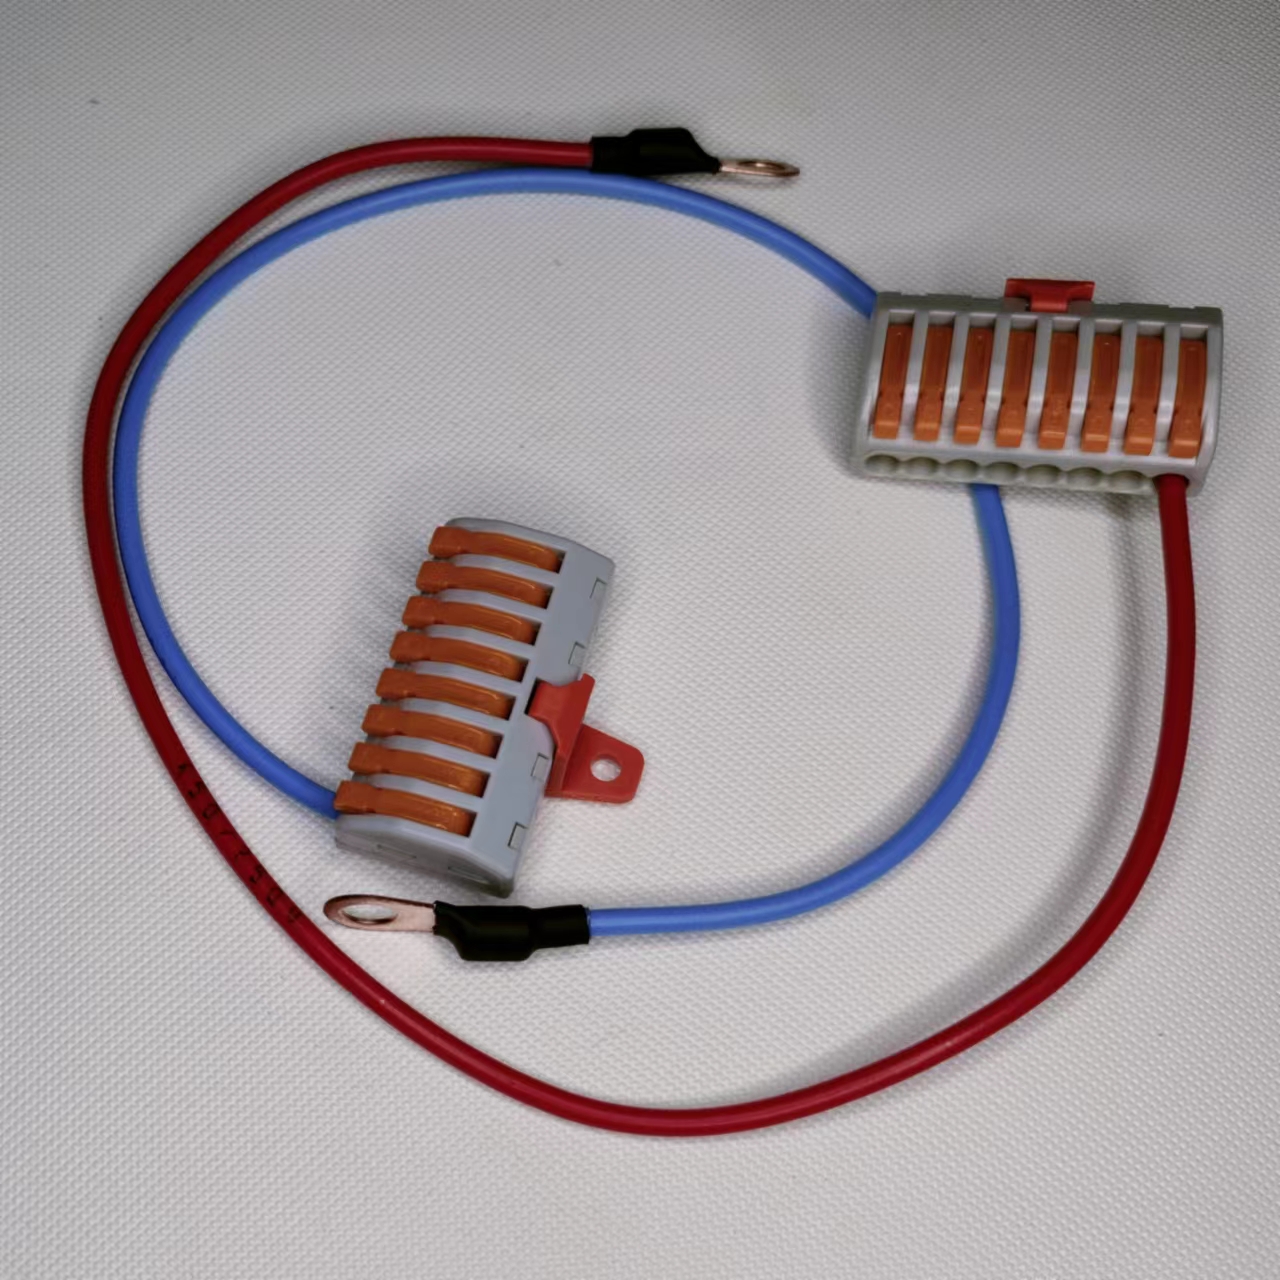 电动摩托机车踏板电瓶及ACC取电接口快速连接端子分线器